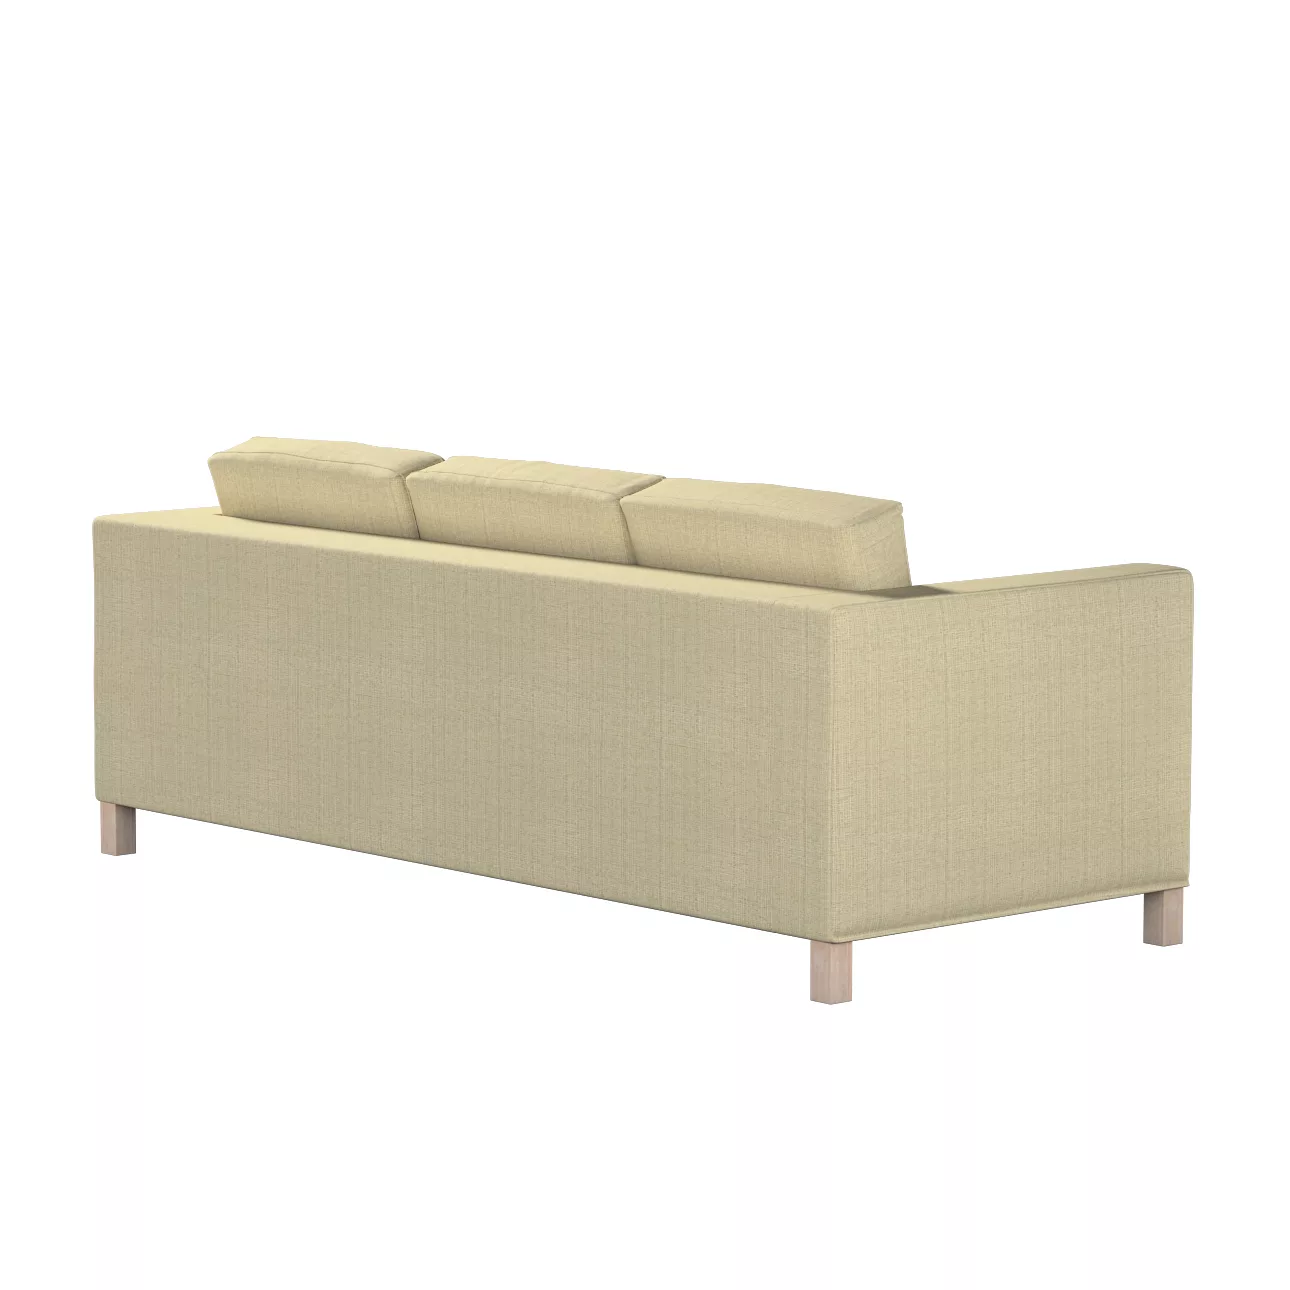 Bezug für Karlanda 3-Sitzer Sofa nicht ausklappbar, kurz, beige-creme, Bezu günstig online kaufen